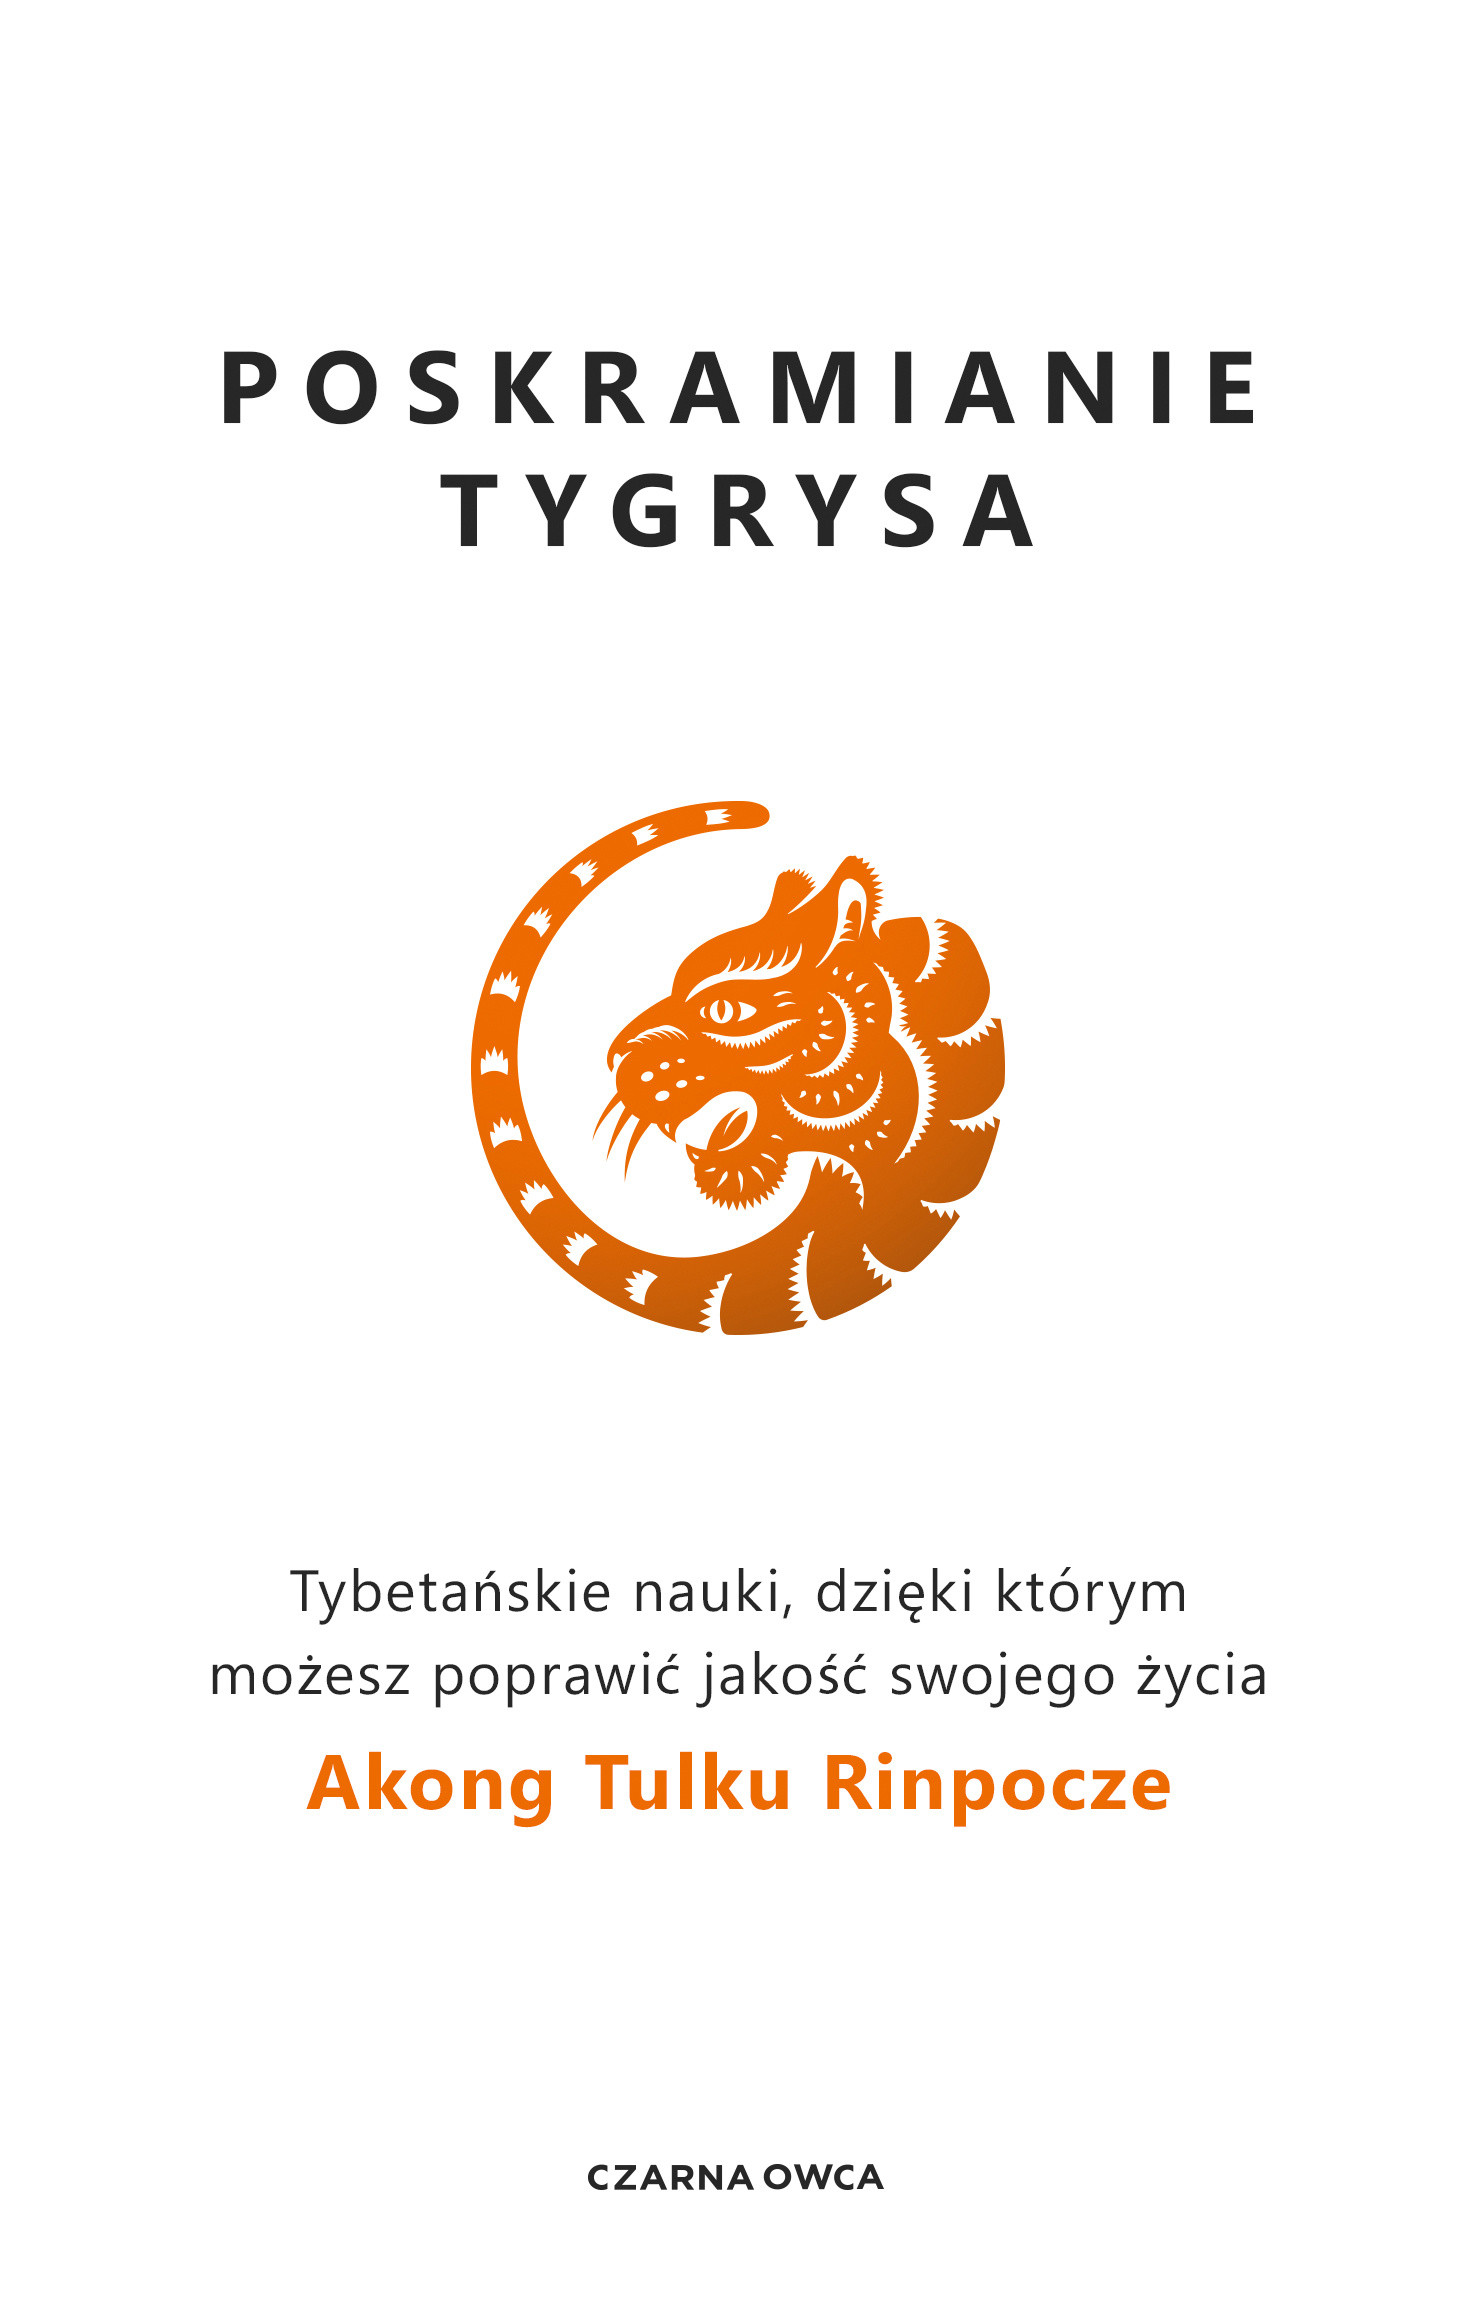 Okładka:Poskramianie tygrysa. Tybetańskie nauki, dzięki którym możesz poprawić jakość swojego życia 